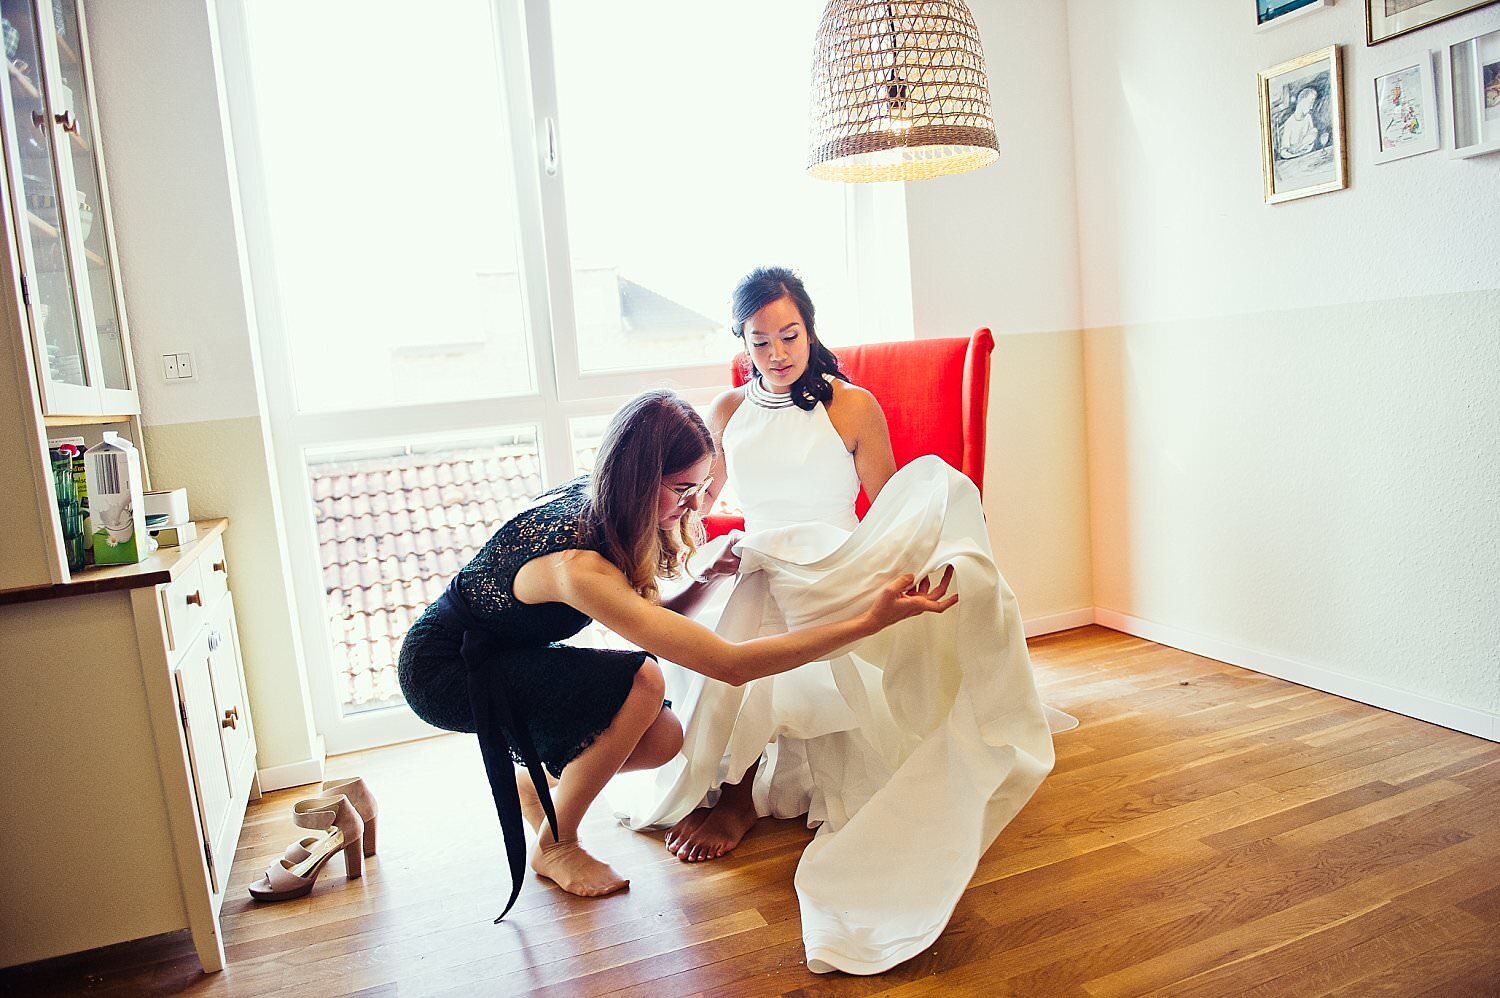 Trauzeugin hilft der Braut bei den Vorbereitungen